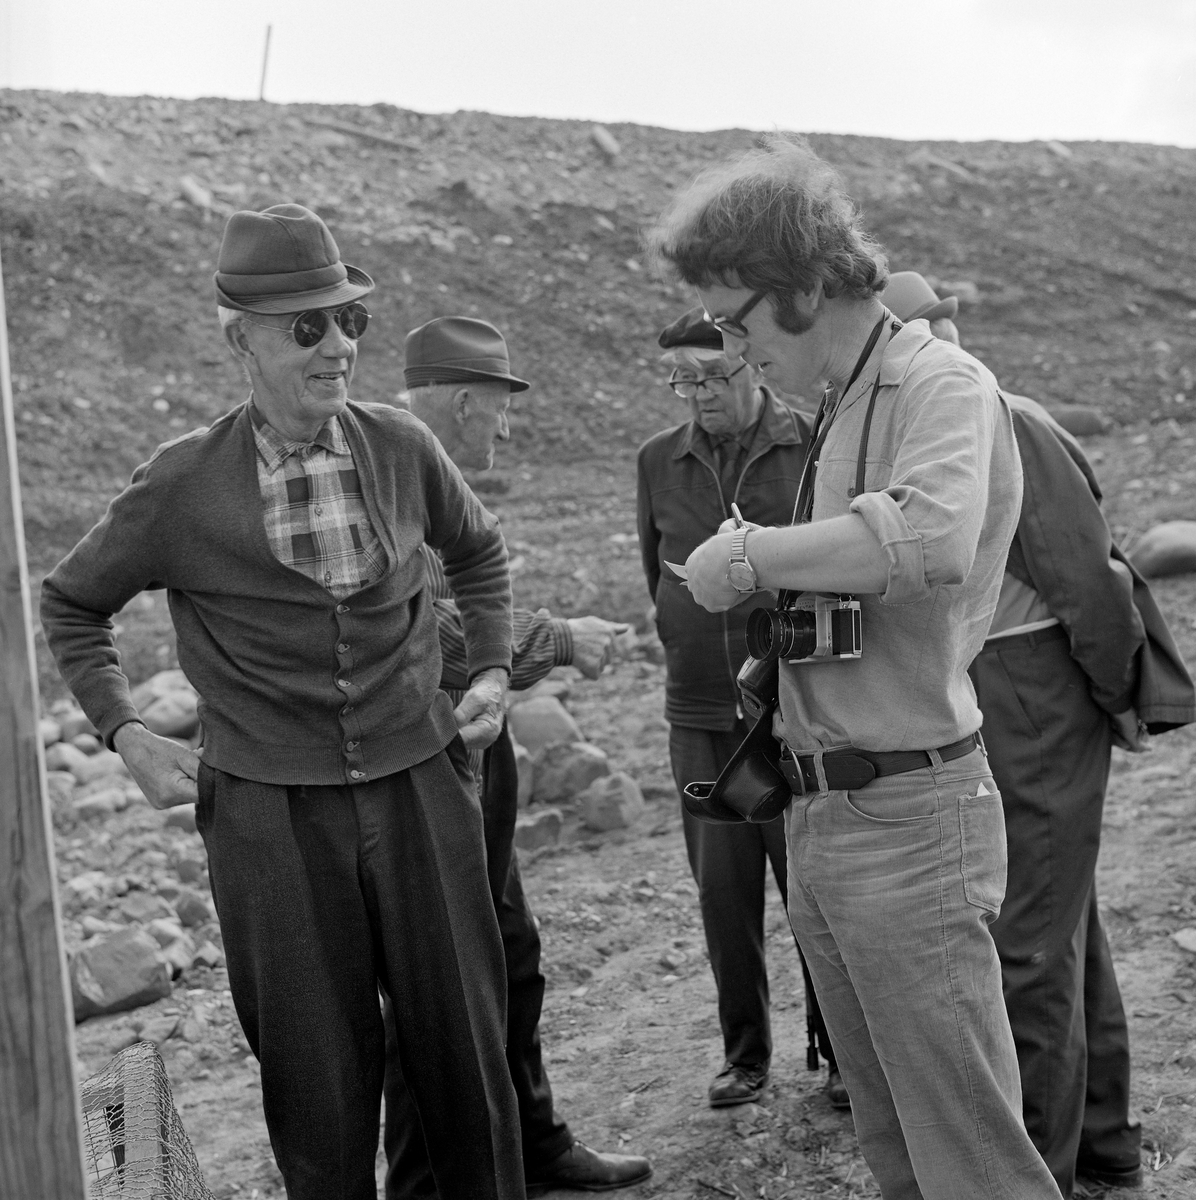 Til høyre på dette bildet ser vi Åsmund Eknæs (1940-1981) på feltarbeid på Fossbakken under garden Nedre Kåterud i Stange, der det tradisjonelle kupefisket etter mort (her kalt «sørenne») i den nedre delen av Svartelva, som på dette tidspunktet var truet av en utvidelse av hovedvegen mellom Oslo og Trondheim, E6-  Eknæs er fotografert med en notatblokk i hendene og kamera på magen mens han snakket med informanten Håkon Berge (1896-1980) fra Stange.

Åsmund Eknæs var fra Krokstadelva i Nedre Eiker i Buskerud.  Han avla magsistergradseksamen i etnologi ved Universitetet i Oslo med avhandlingsarbeidet «Det tradisjonelle laksefiskeriet i Drammenselva - Naturforhold og redskapsutvikling» i 1972  Deretter ble Eknæs ansatt som vitenskapelig assistent ved Norsk Skogbruksmuseum i Elverum.  I 1974 fikk han konservatortittel, etter at en vitenskapelig komité hadde gjennomgått den faglitterære produksjonen hans.  Eknæs var sentral da Norsk Skogbruksmuseum bygde basisutstillinger om ferskvannsfiske, jaktvåpen og tollekniver, og han var en flittig feltarbeider, særlig på steder der det pågikk fiskeaktiviteter.  I 1979 gav han ut boka «Innlandsfiske», som gir en oversikt over innlandsfiskets historie her til lands.  Han foreleste også for grunnfagsstudentene i etnologi om dette emnet.  Eknæs ble dessverre rammet av kreft og døde i 1981, bare drøyt 40 år gammel.